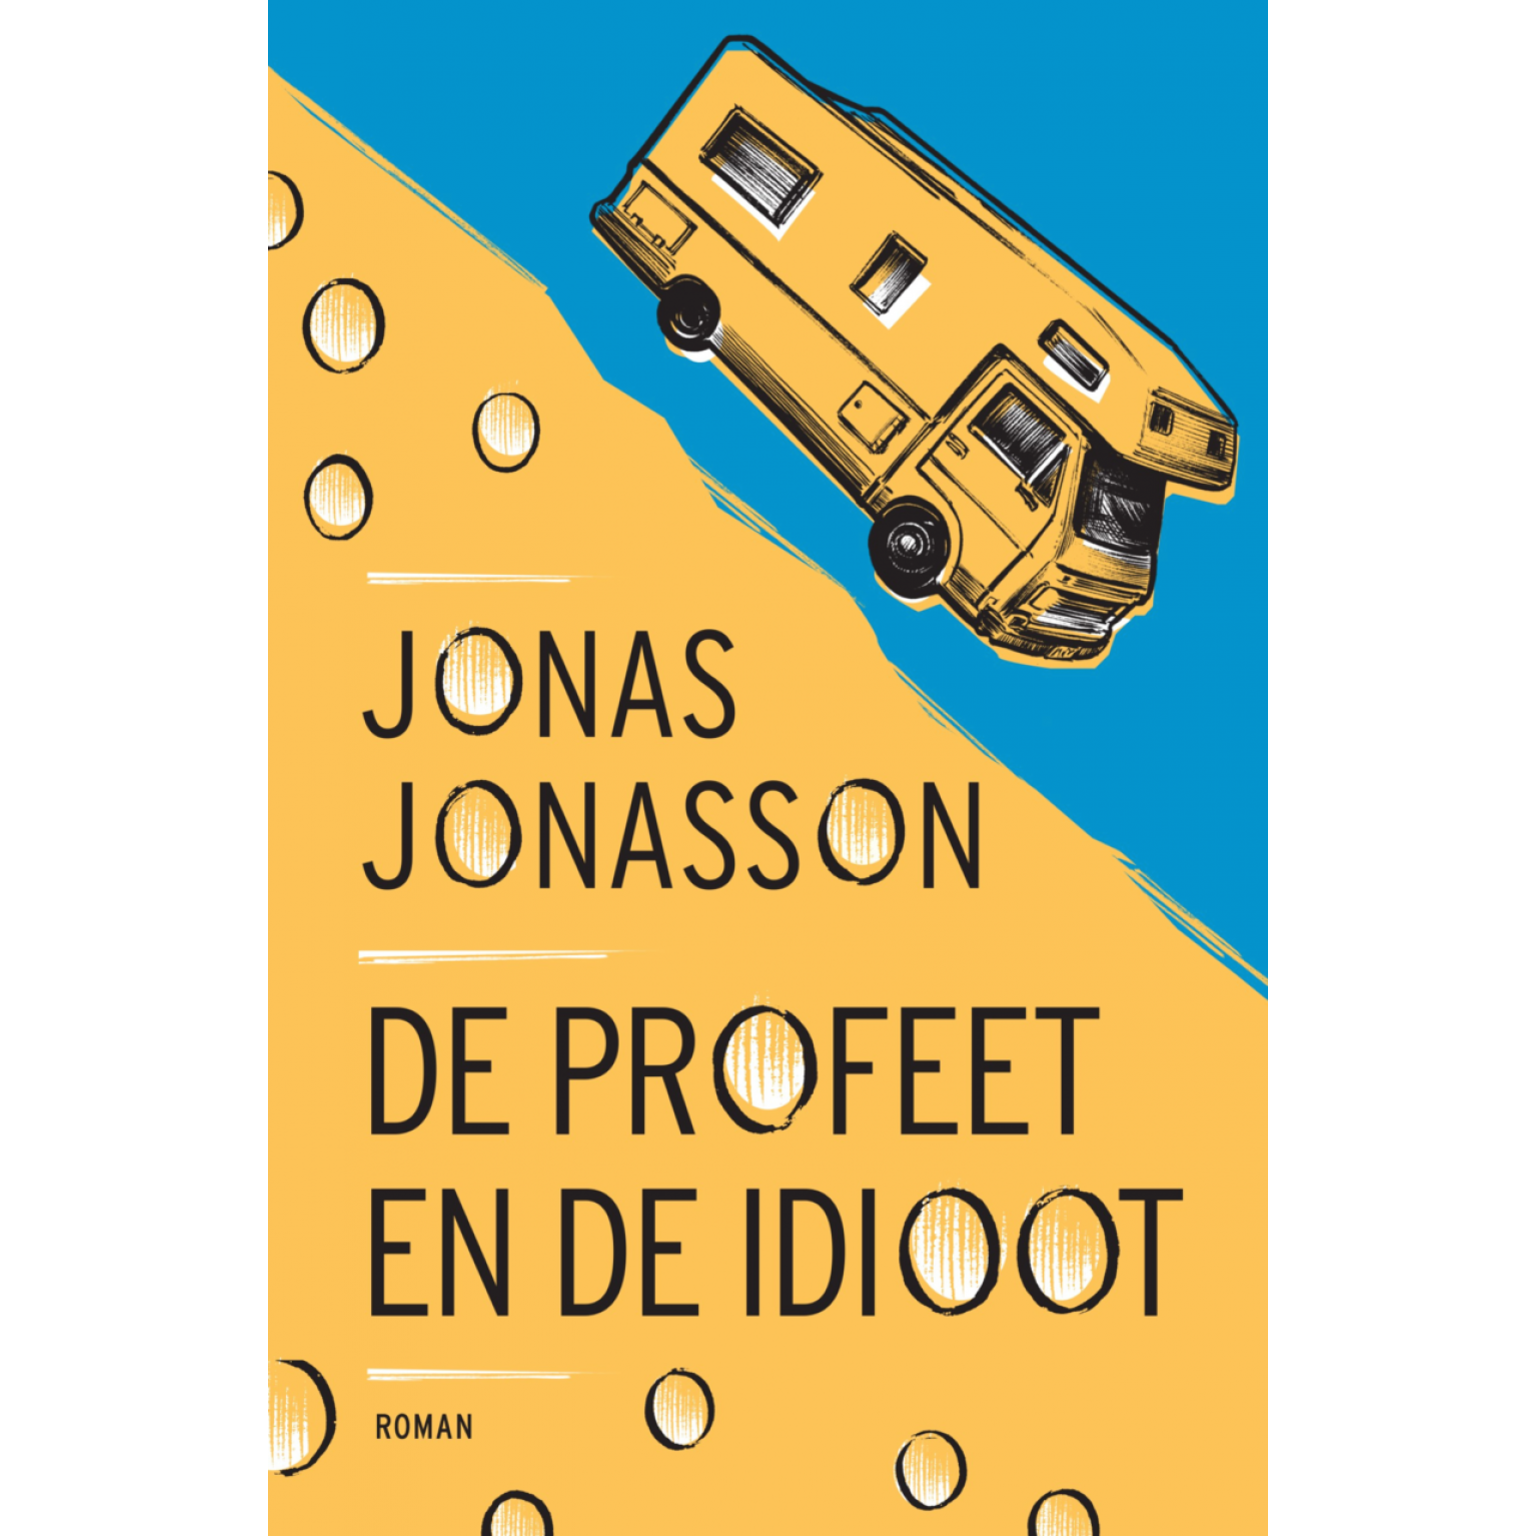 De profeet en de idioot - Jonas Jonasson